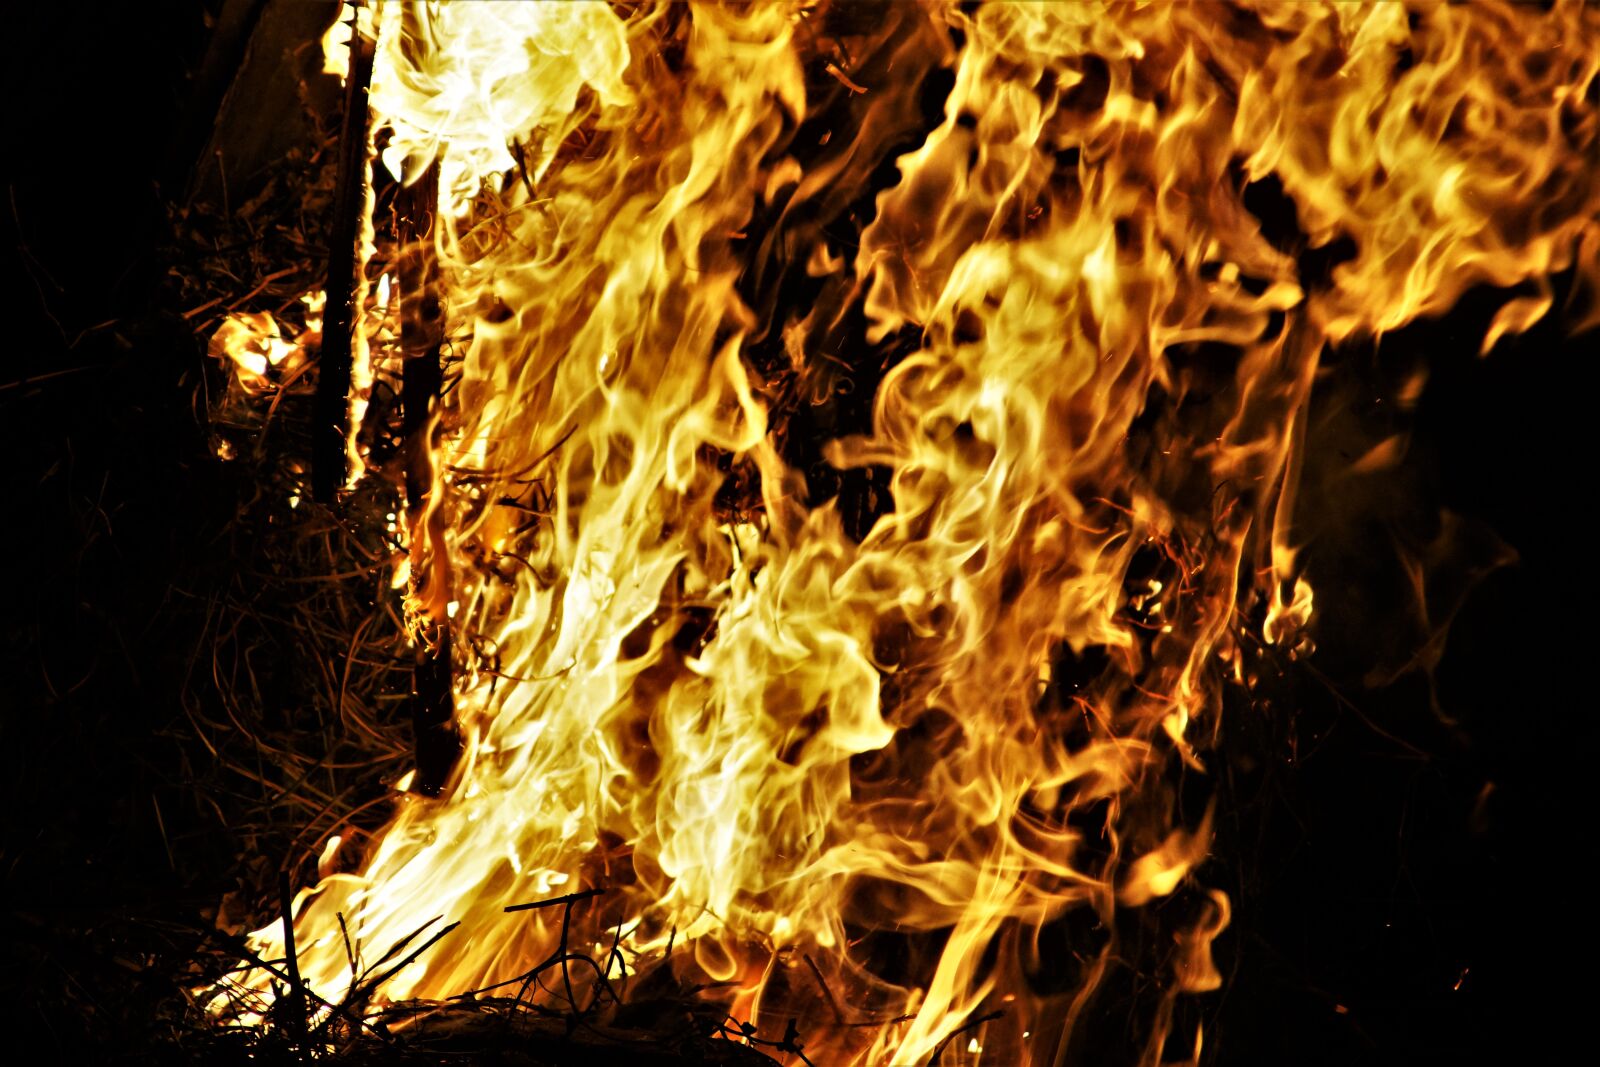 Sony SLT-A77 sample photo. Fire, flame, heat photography